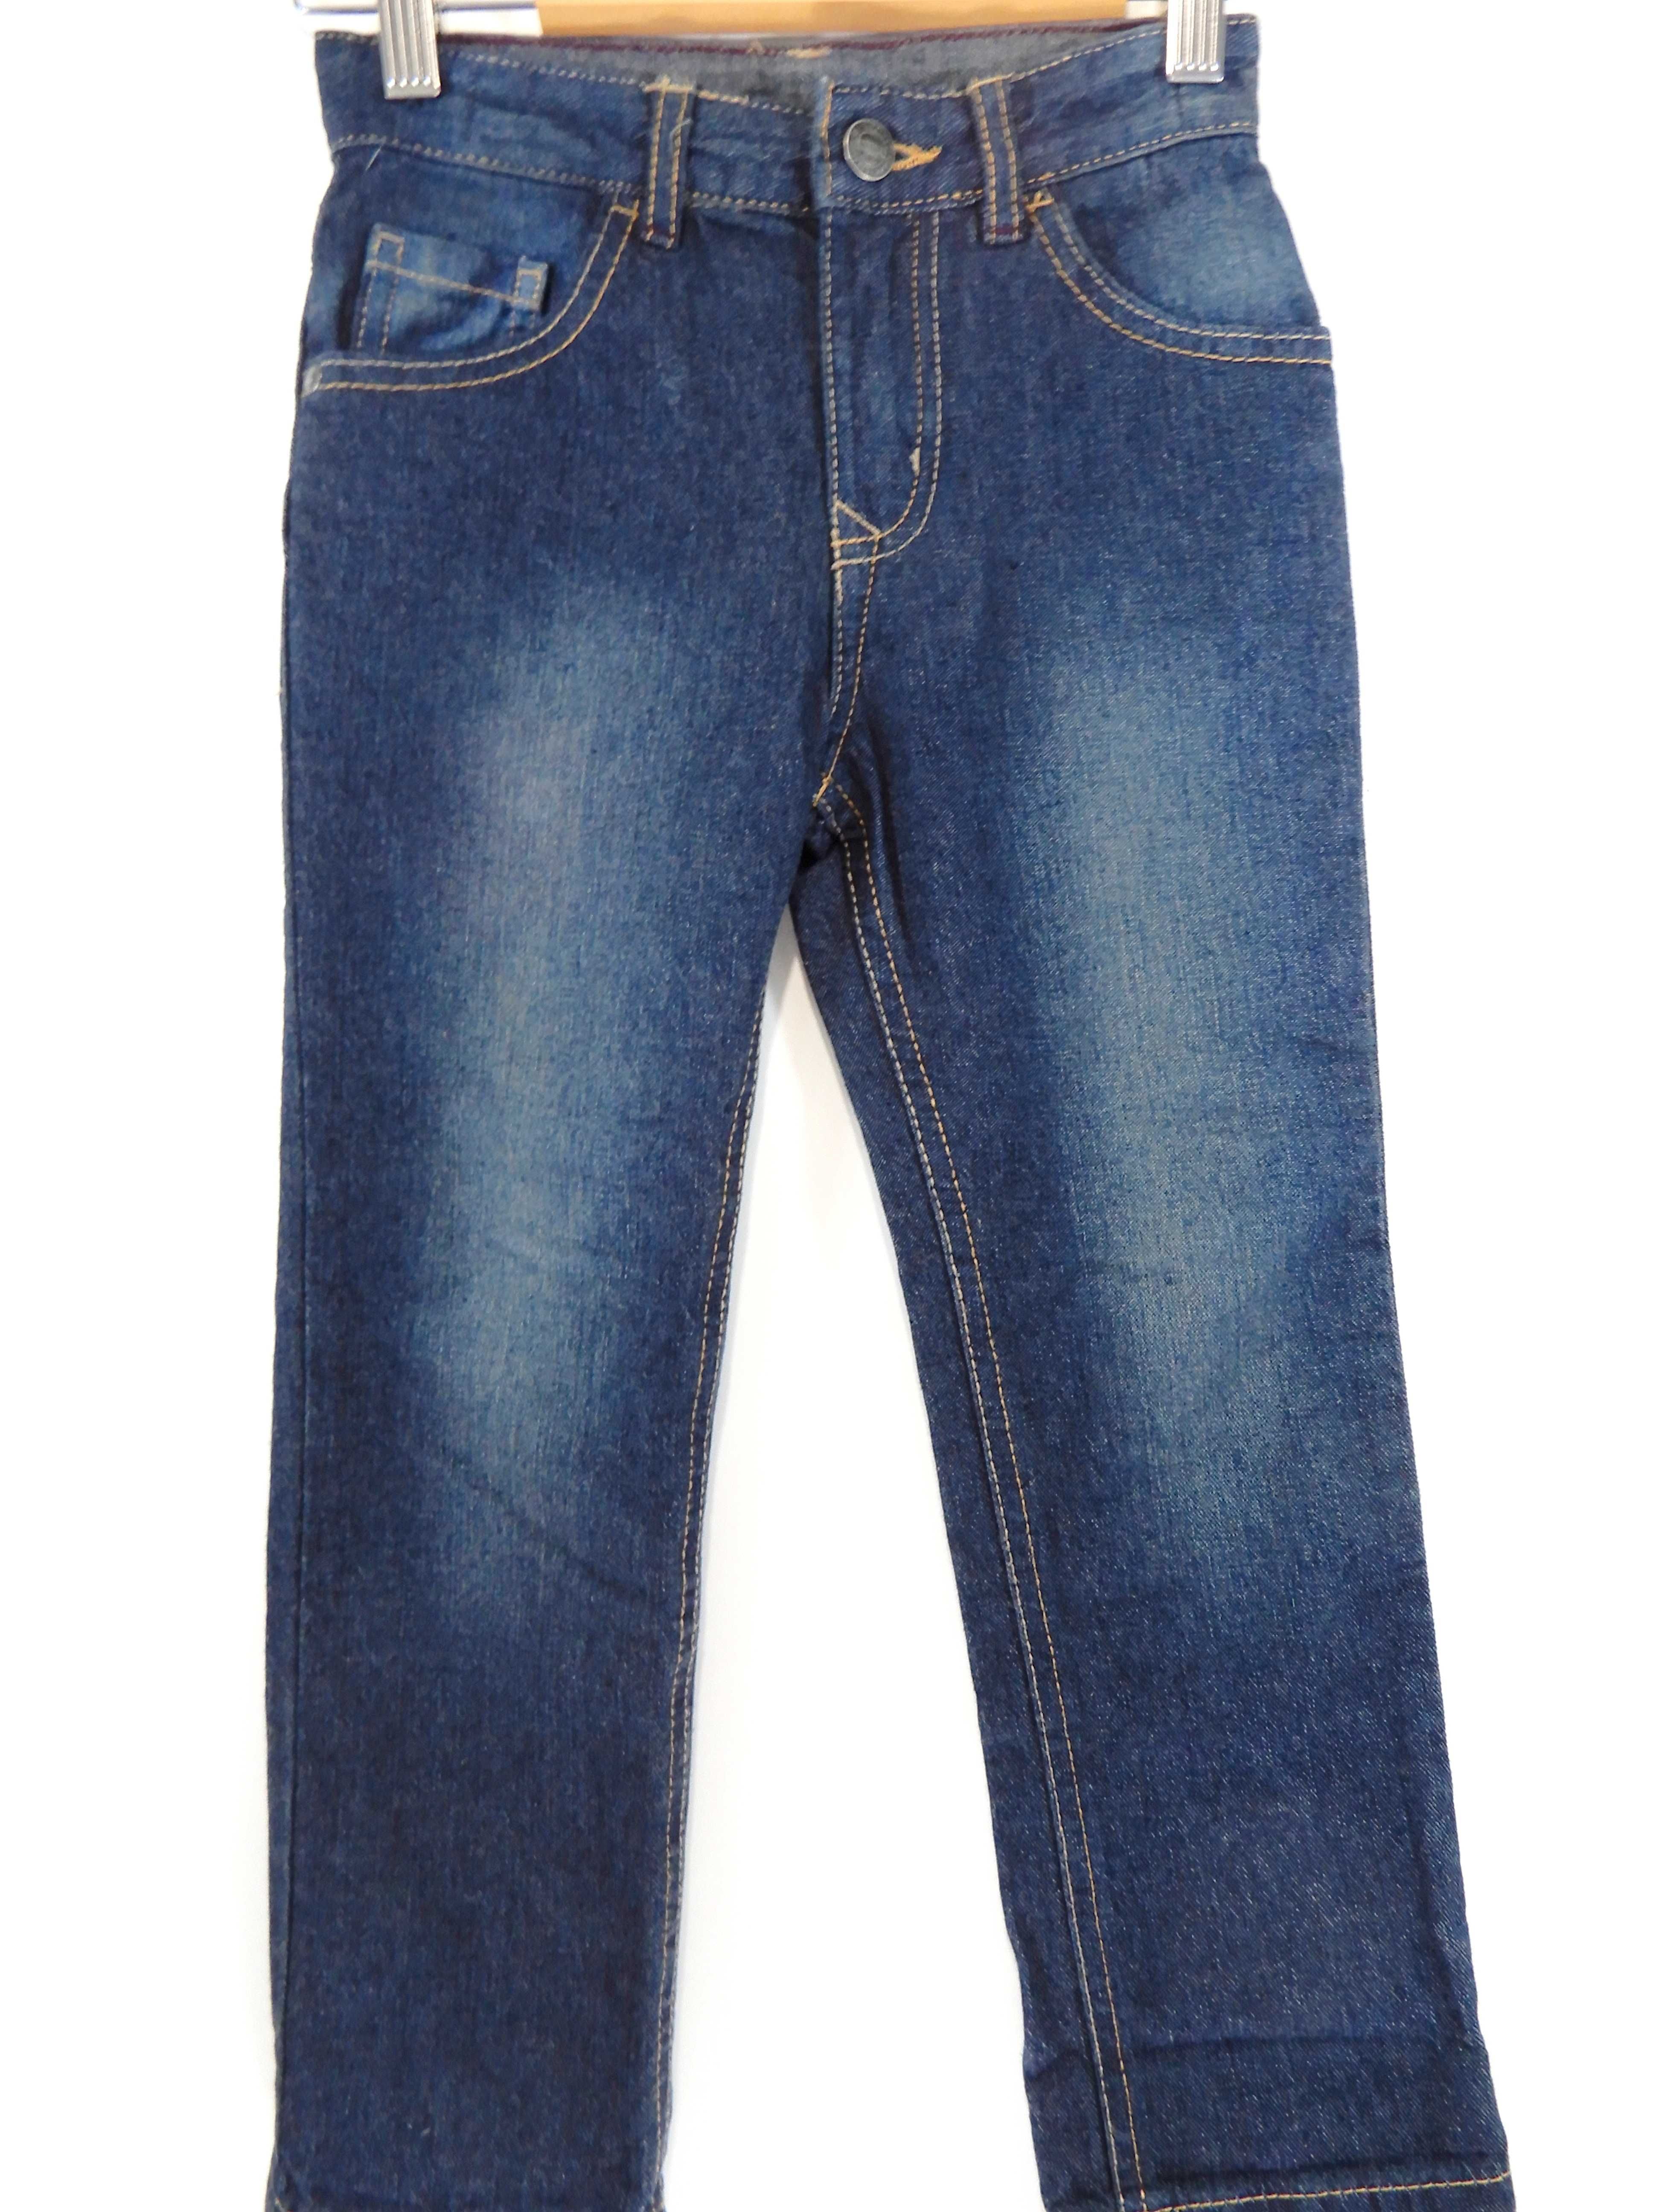 Spodnie jeansowe dżinsowe niebieskie George 110 116